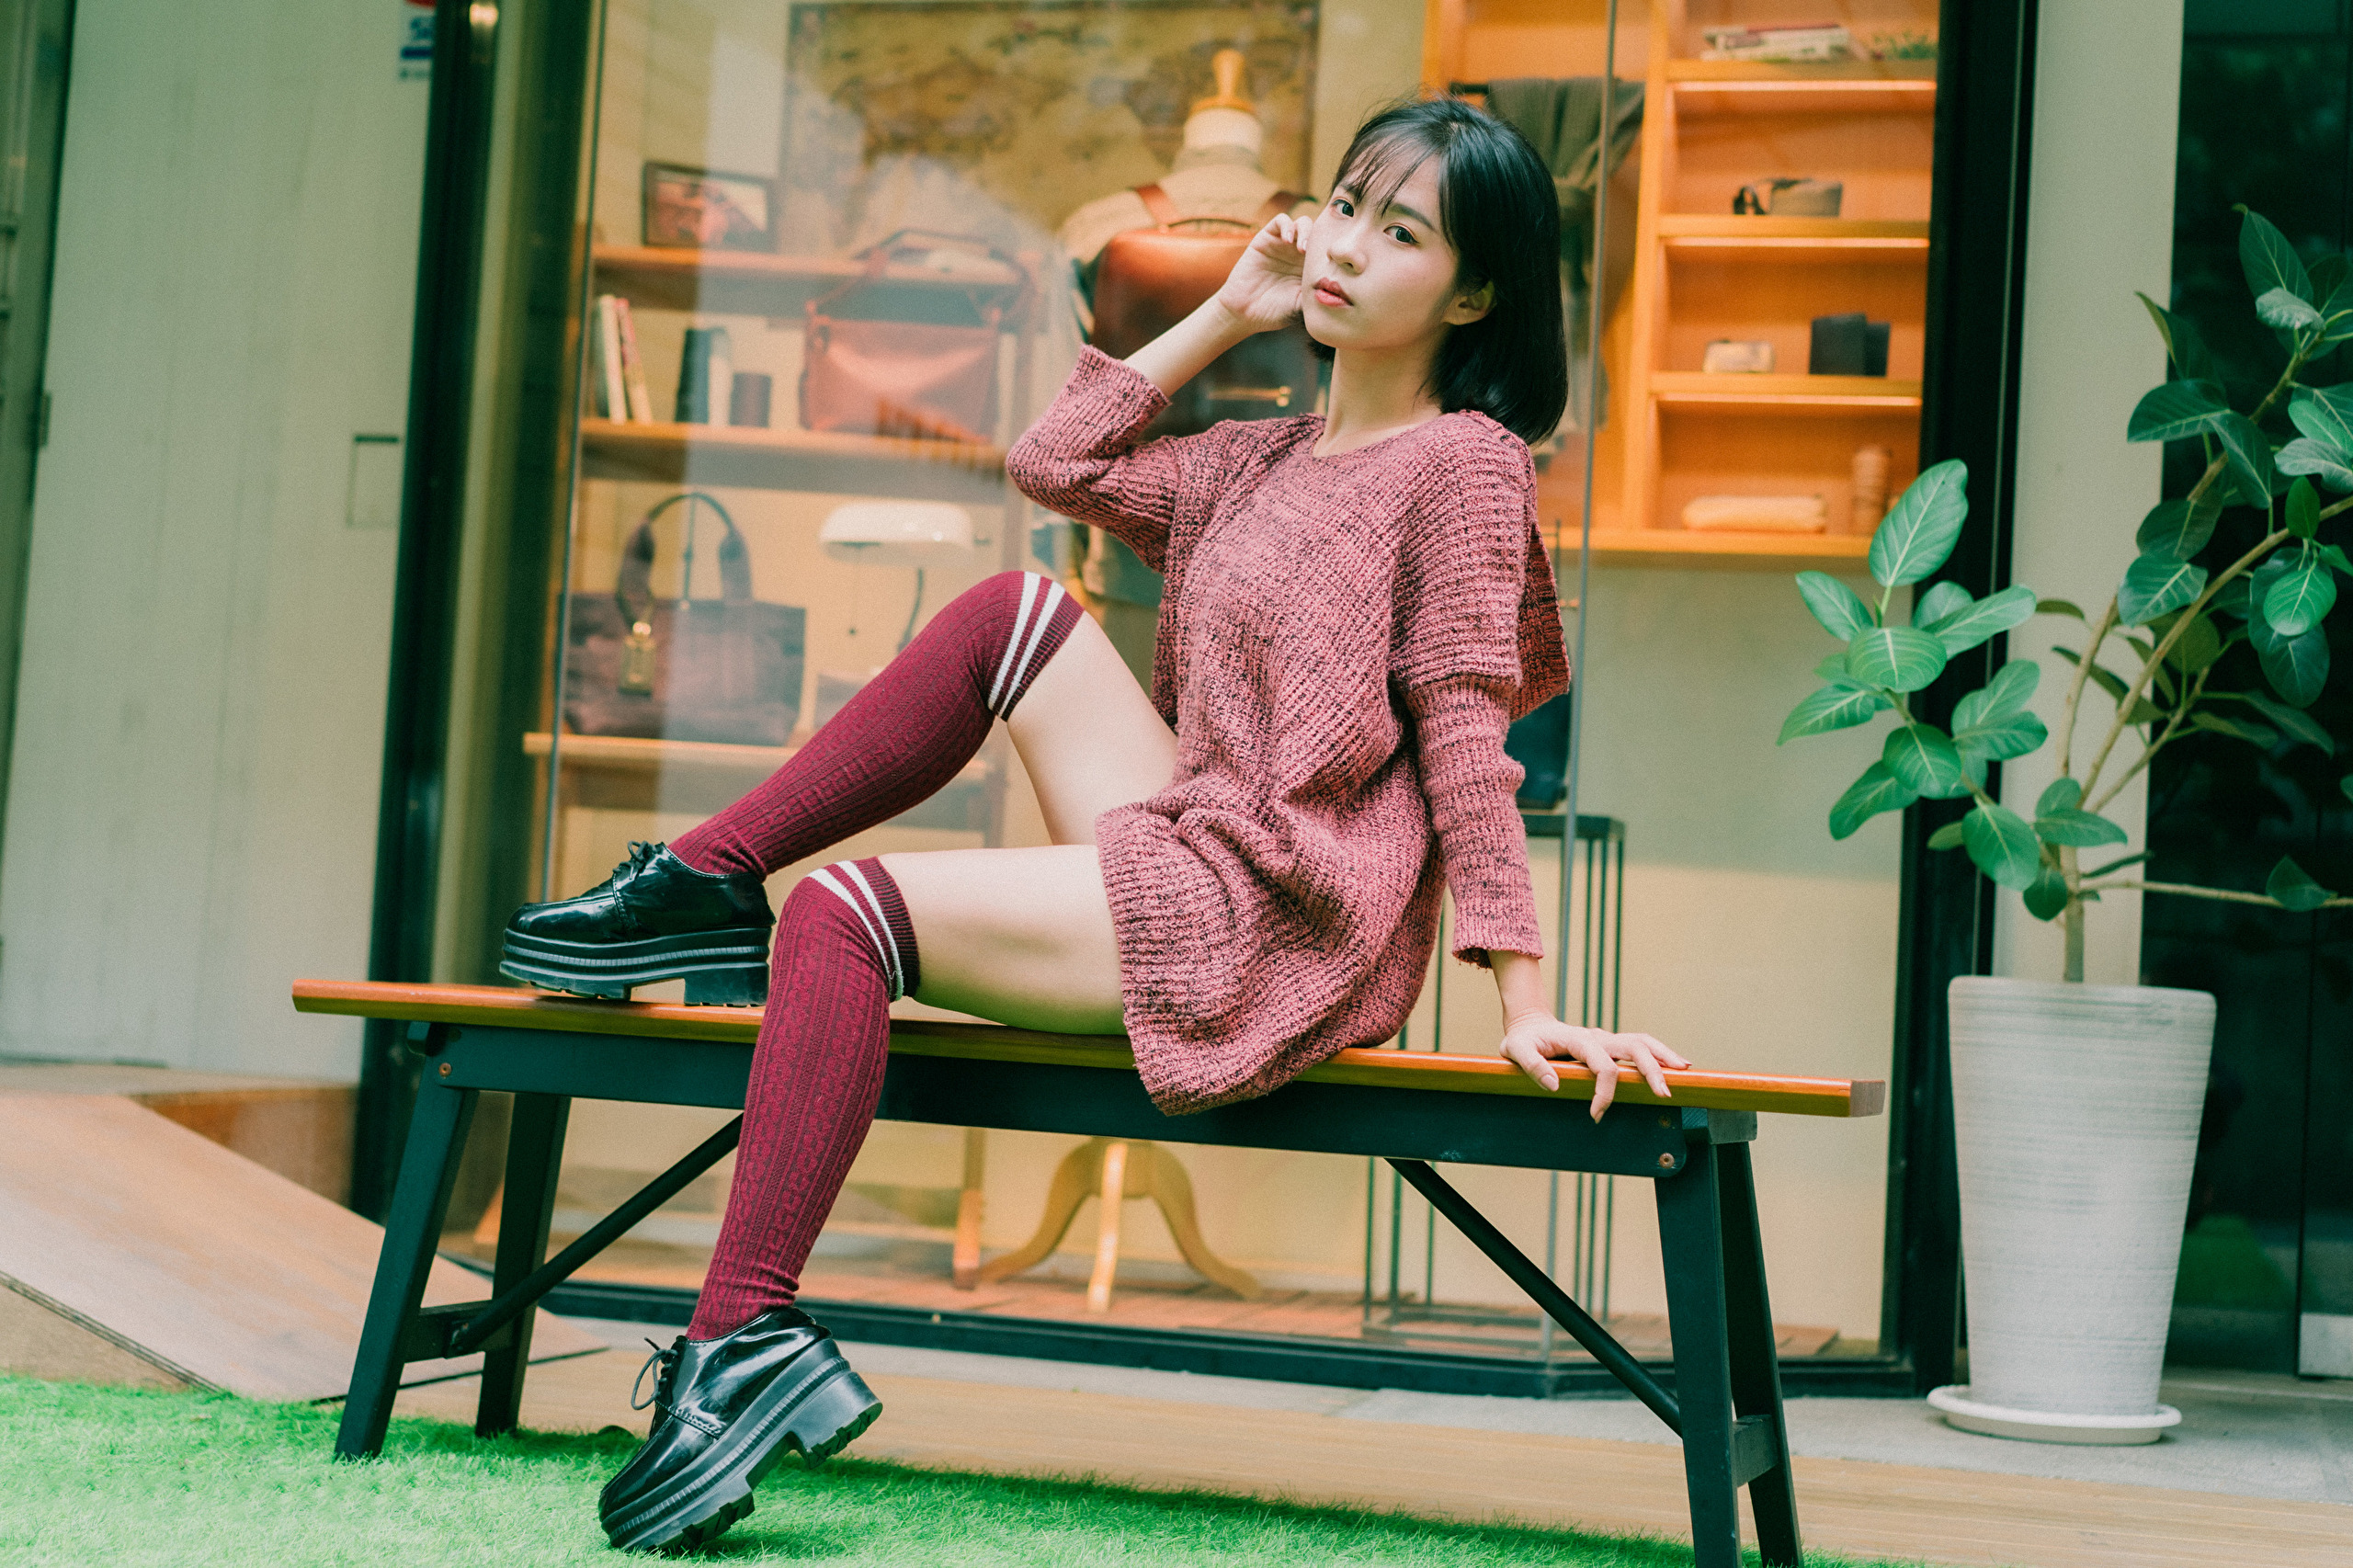 Asian Model Women Long Hair Dark Hair Sitting Knee High Socks Bench 2560x1706